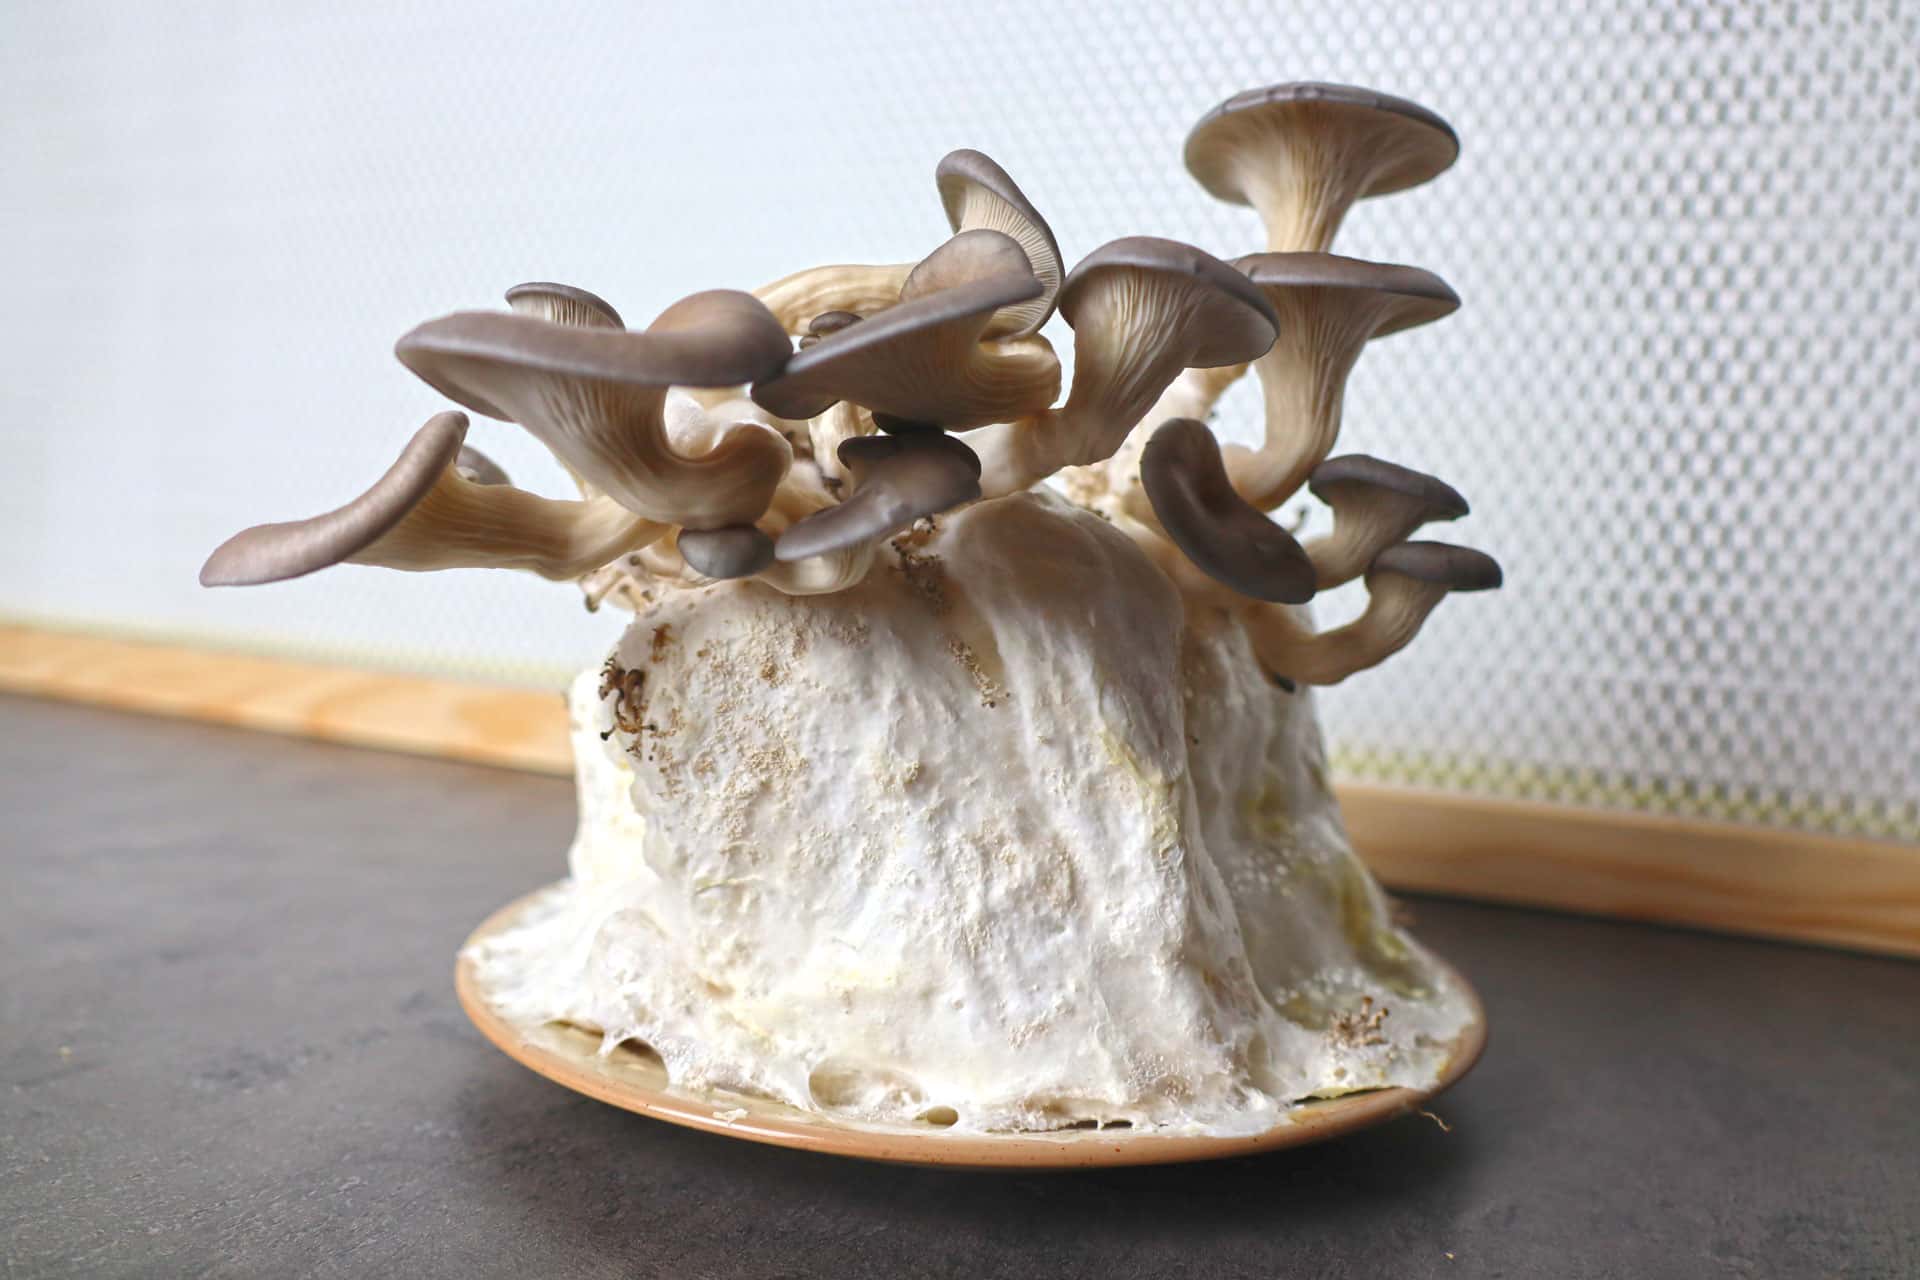 Comment faire pousser des champignons sur du papier toilette ? [Tuto]